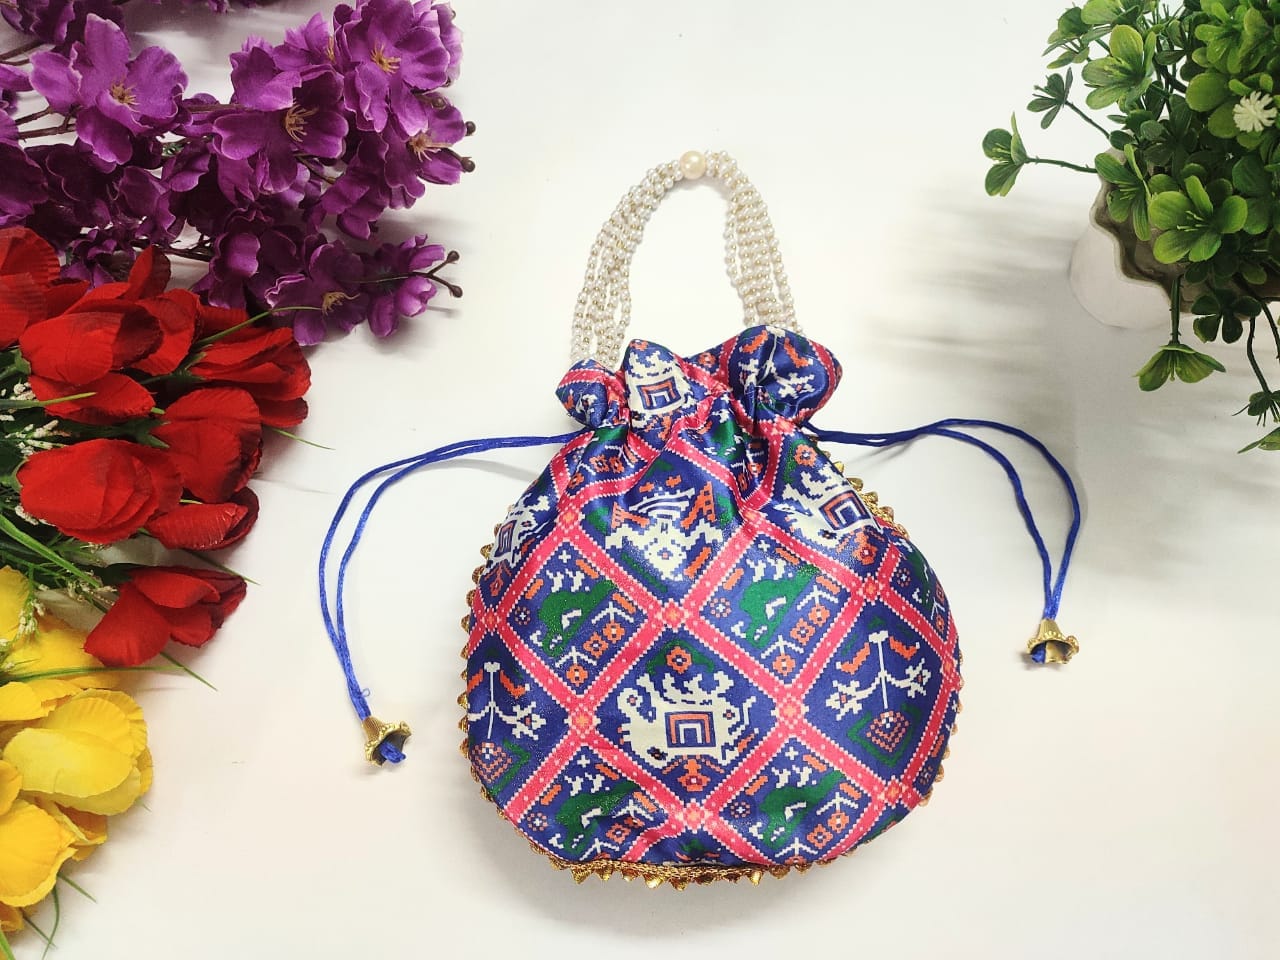 LAMANSH ® Women's Potli Bag Pack of 5 LAMANSH® (Pack of 5 Pcs) Potli bags for women handbags traditional Indian Wristlet with Gota Work